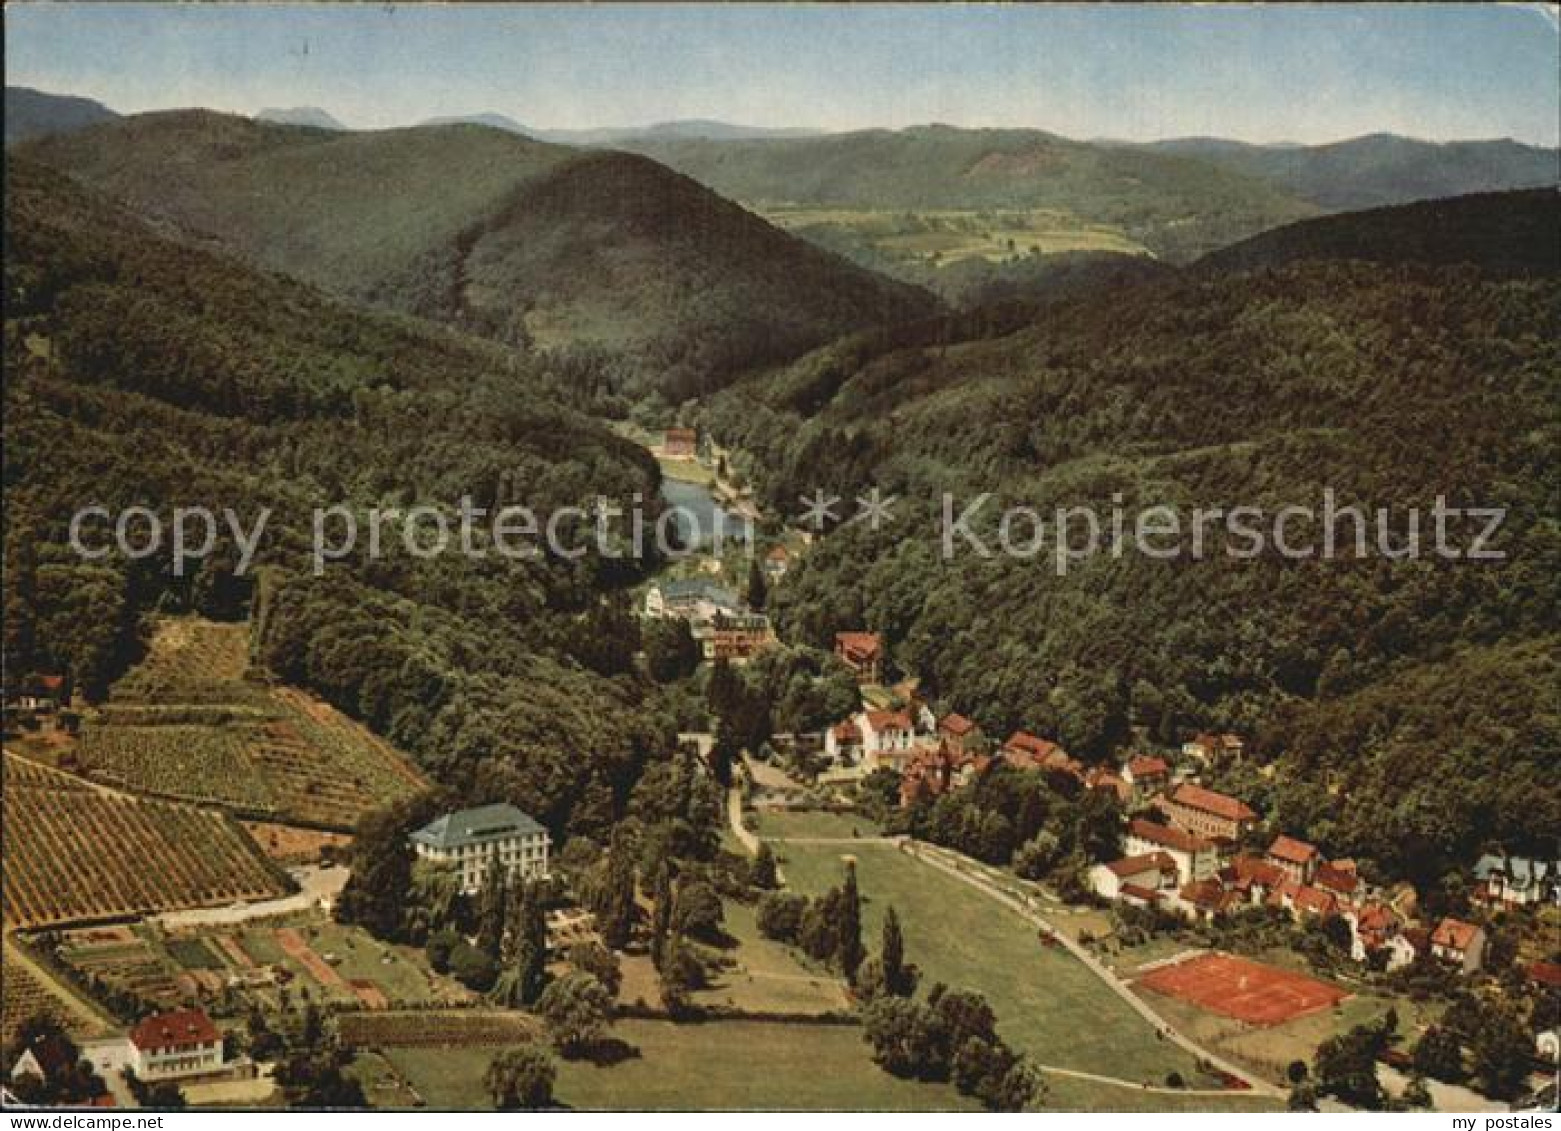 72535198 Bad Bergzabern Kurtal Kneippheilbad Und Heilklimatischer Kurort Flieger - Bad Bergzabern